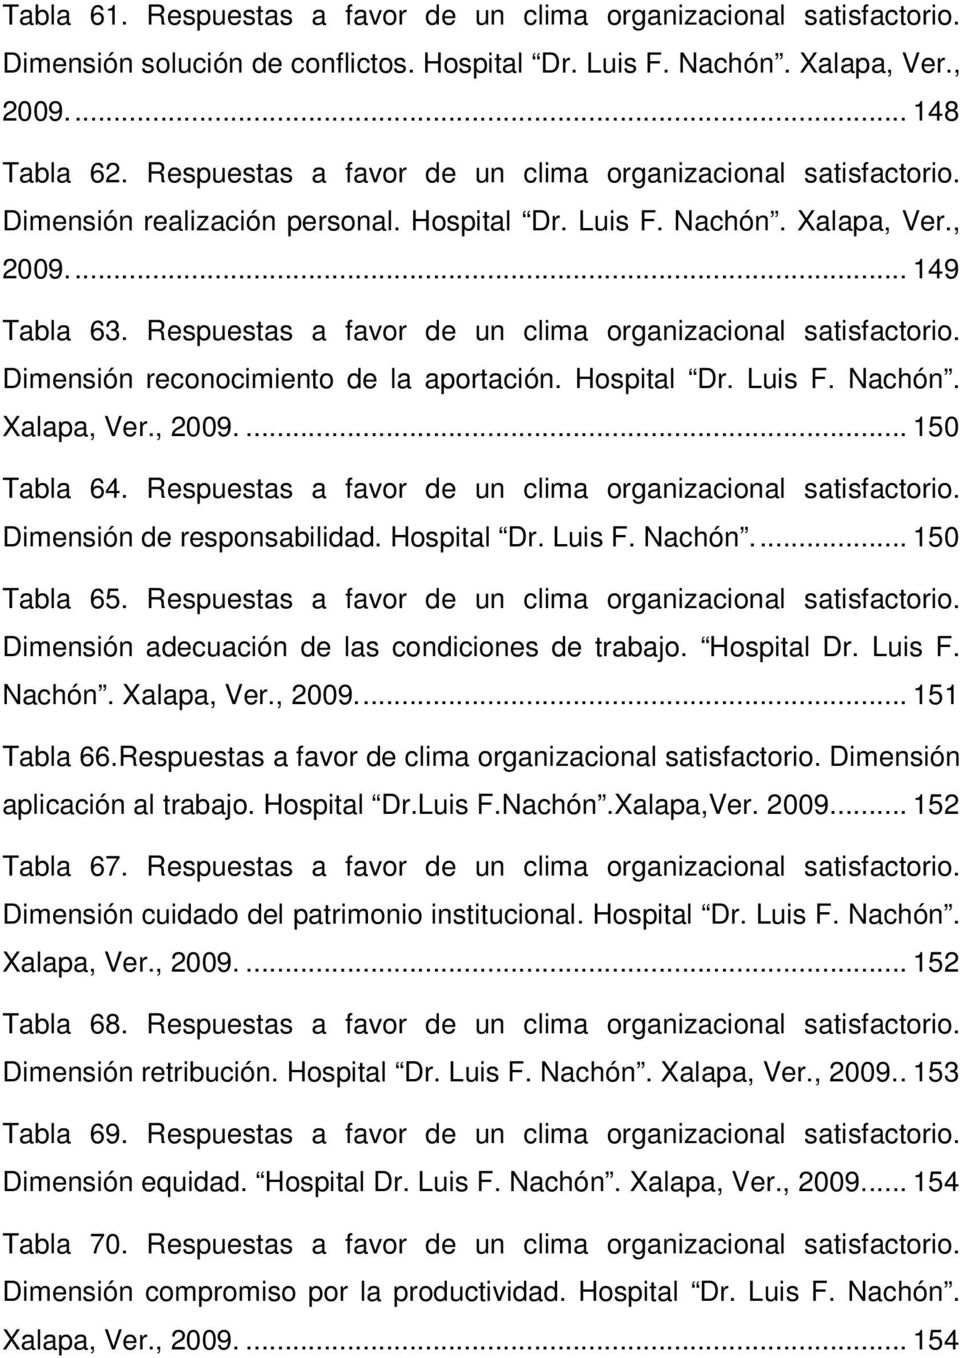 Dimensión reconocimiento de la aportación. Hospital Dr. Luis F. Nachón. Xalapa, Ver., 2009.... 150 Tabla 64. Respuestas a favor de un clima organizacional. Dimensión de responsabilidad. Hospital Dr. Luis F. Nachón.... 150 Tabla 65.